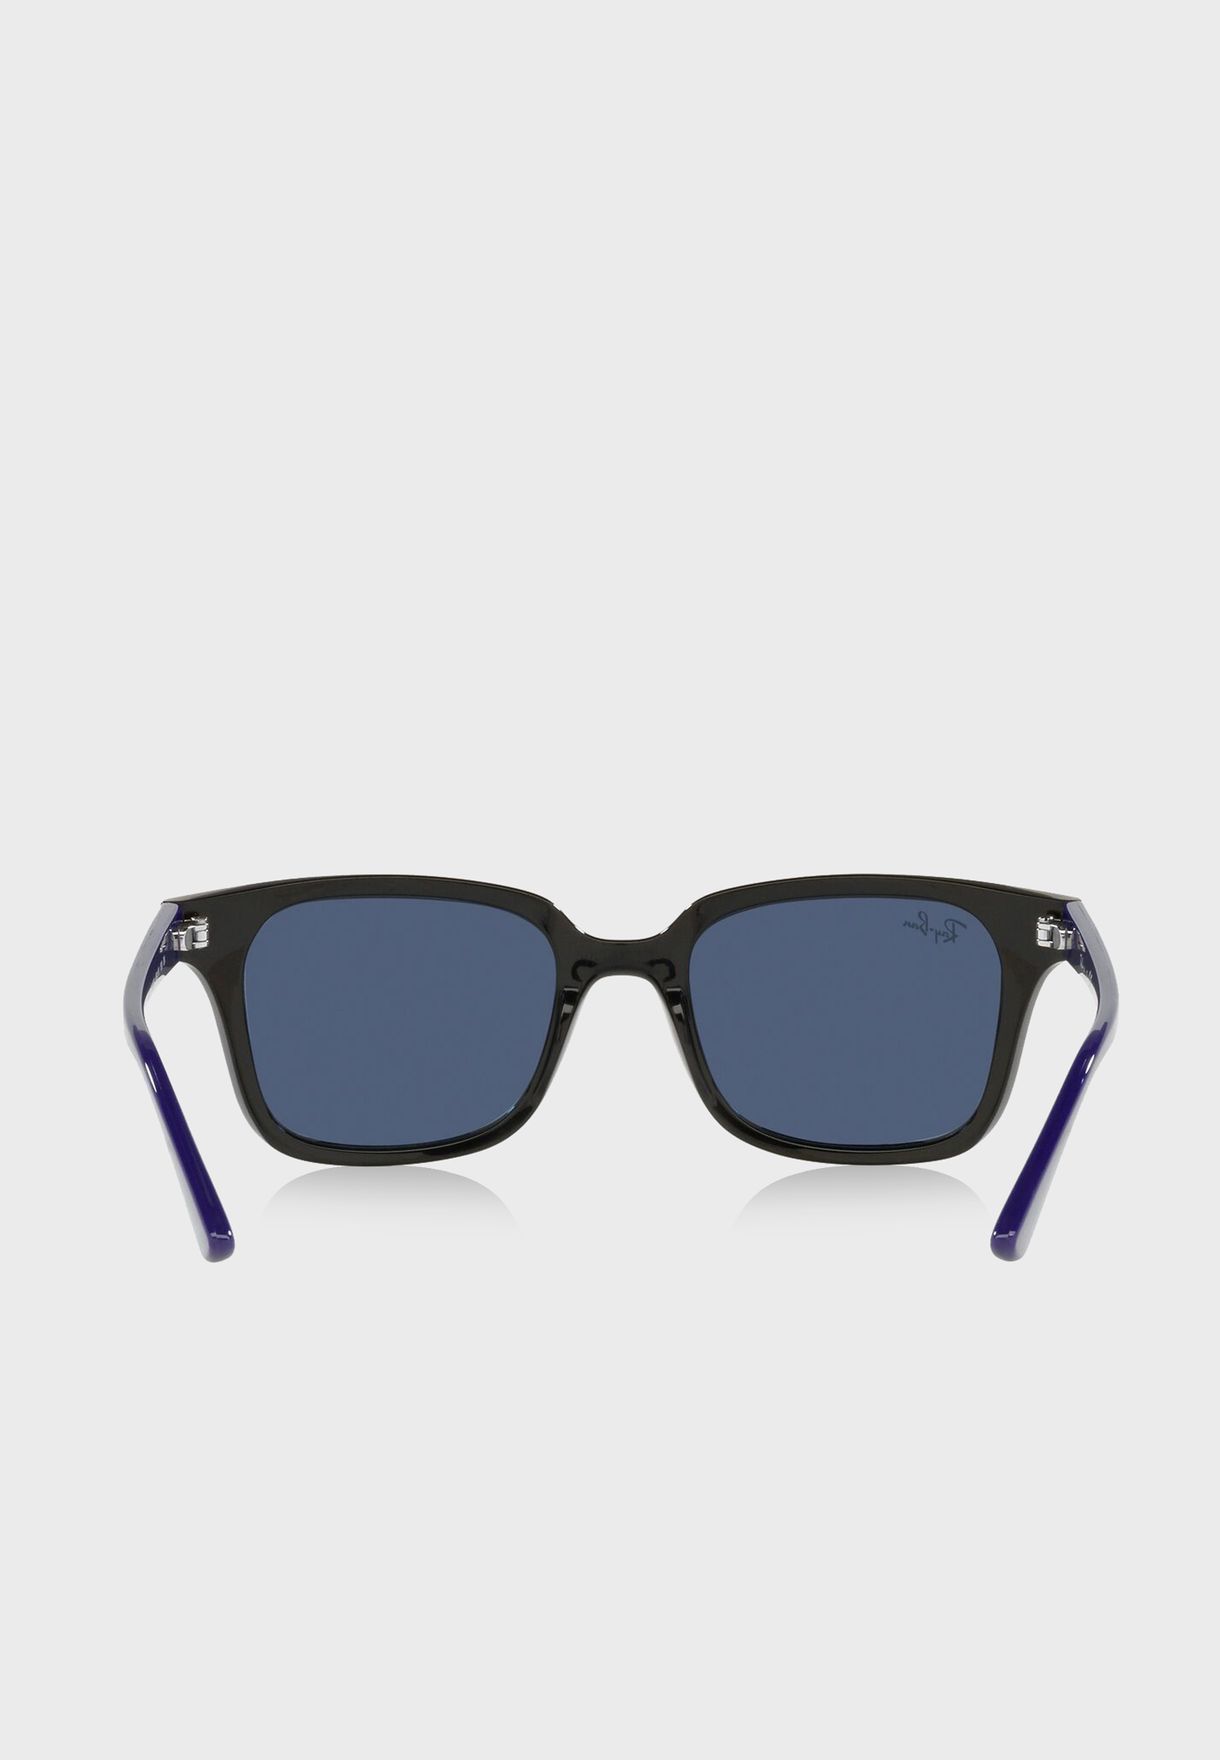 نظارة شمسية واي فيريرز 0Rj9071S